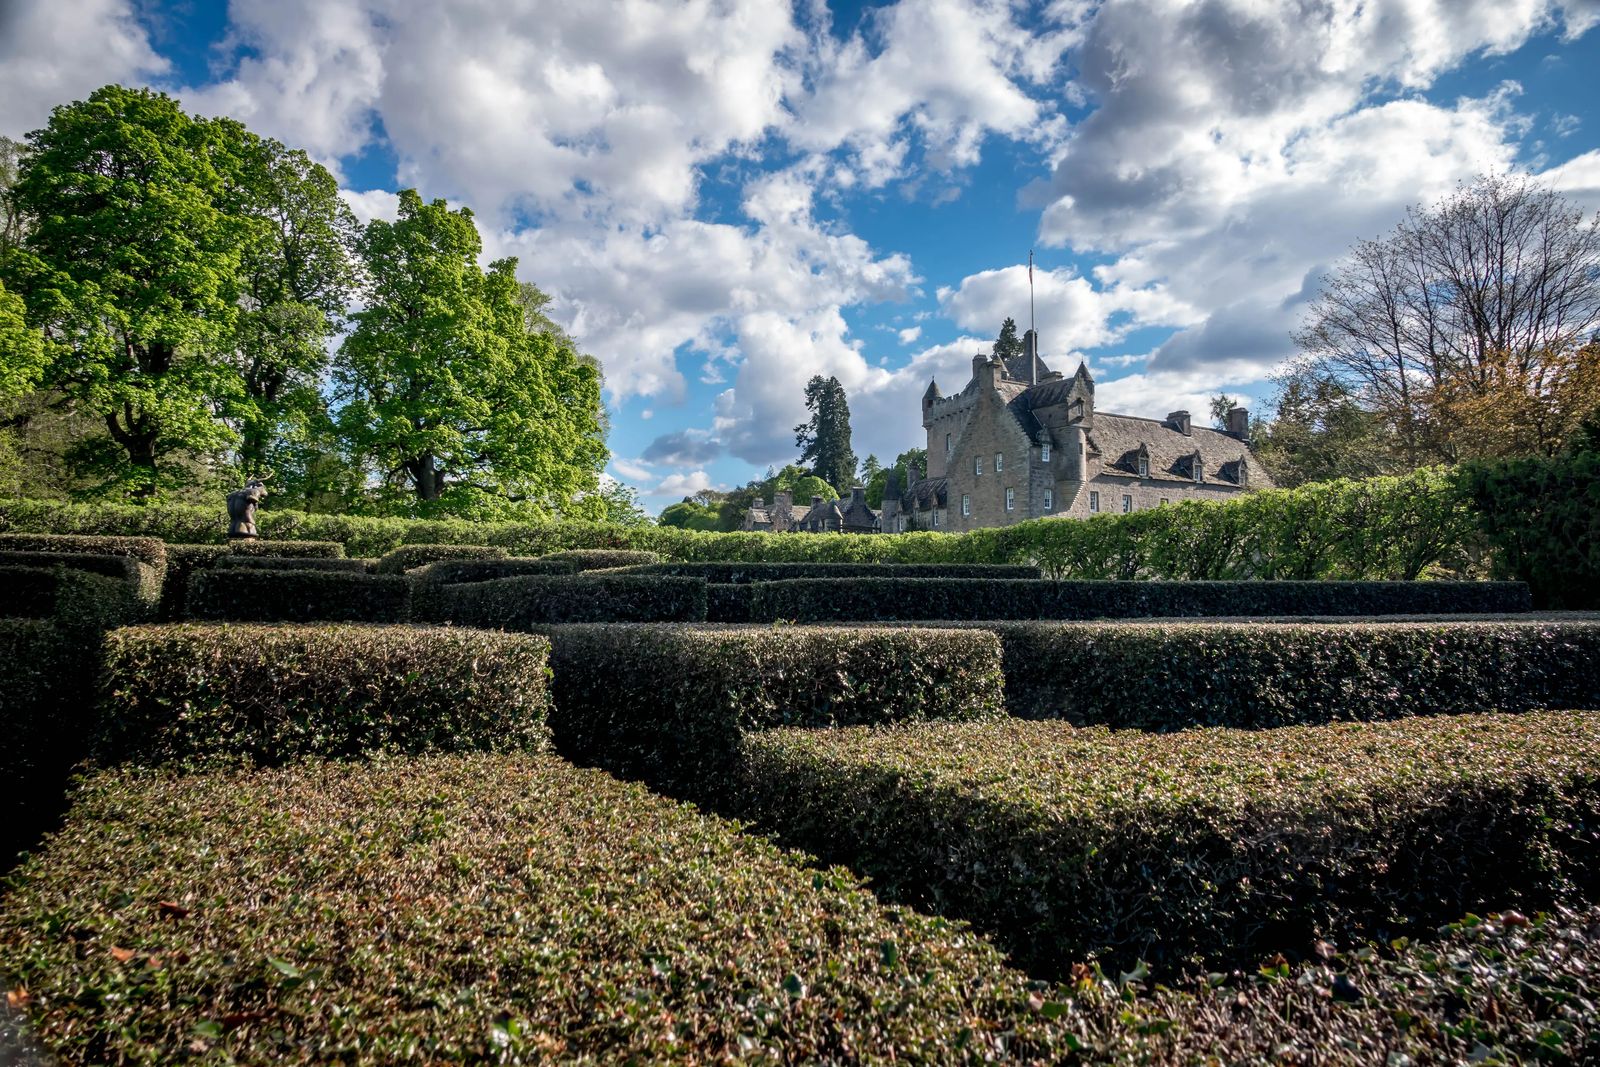 Cawdor Castle in Scotand